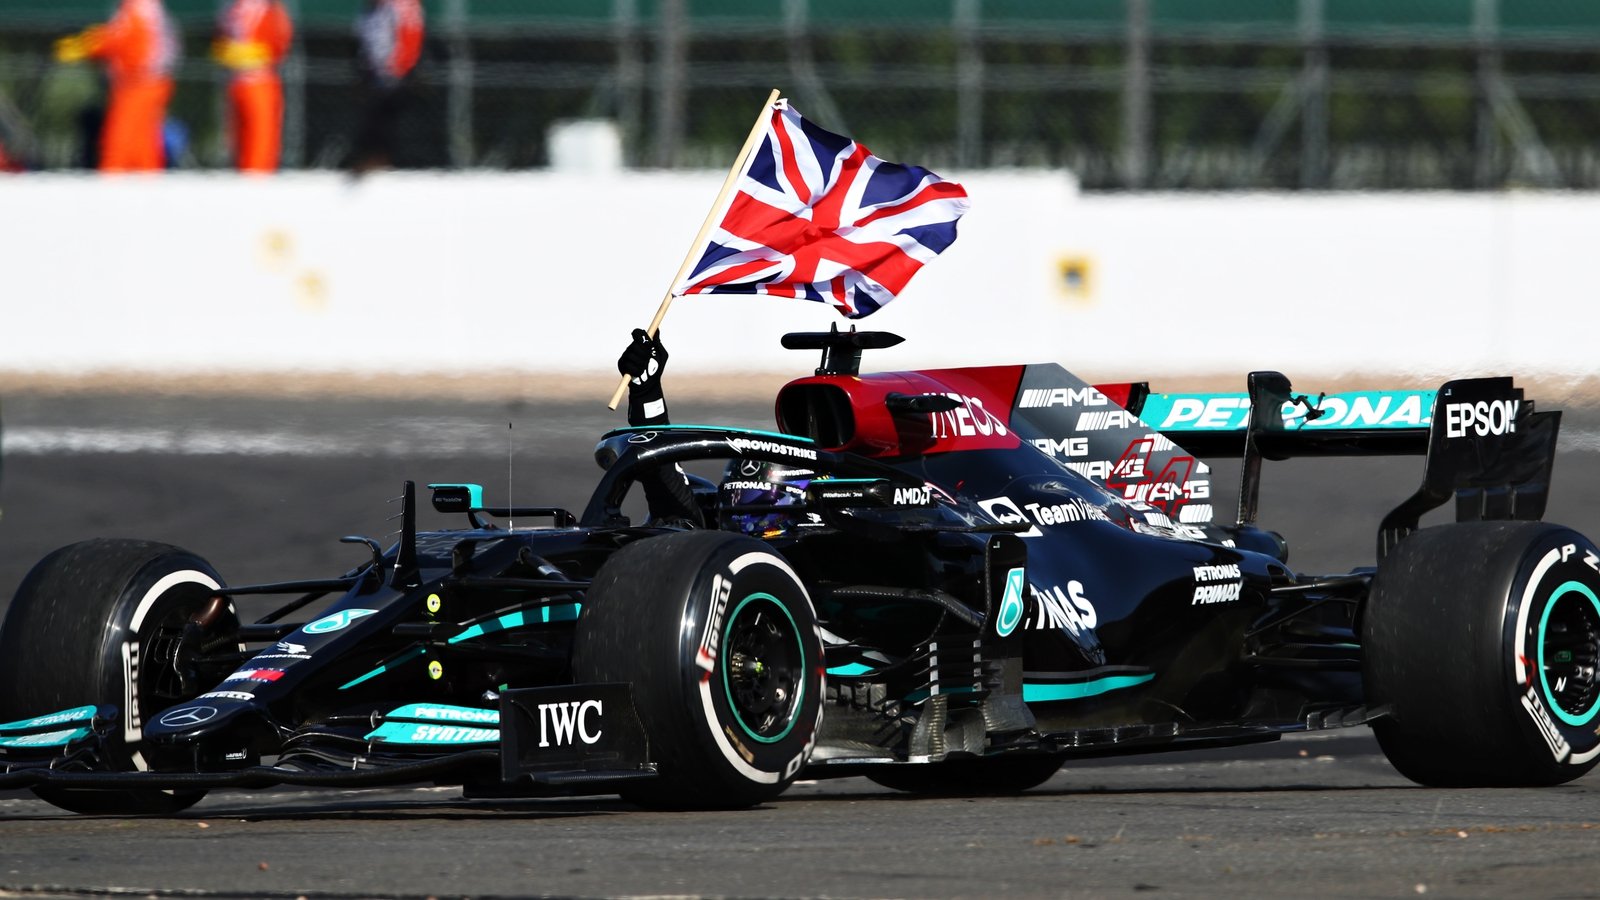 Hamilton wins dramatic British Grand Prix